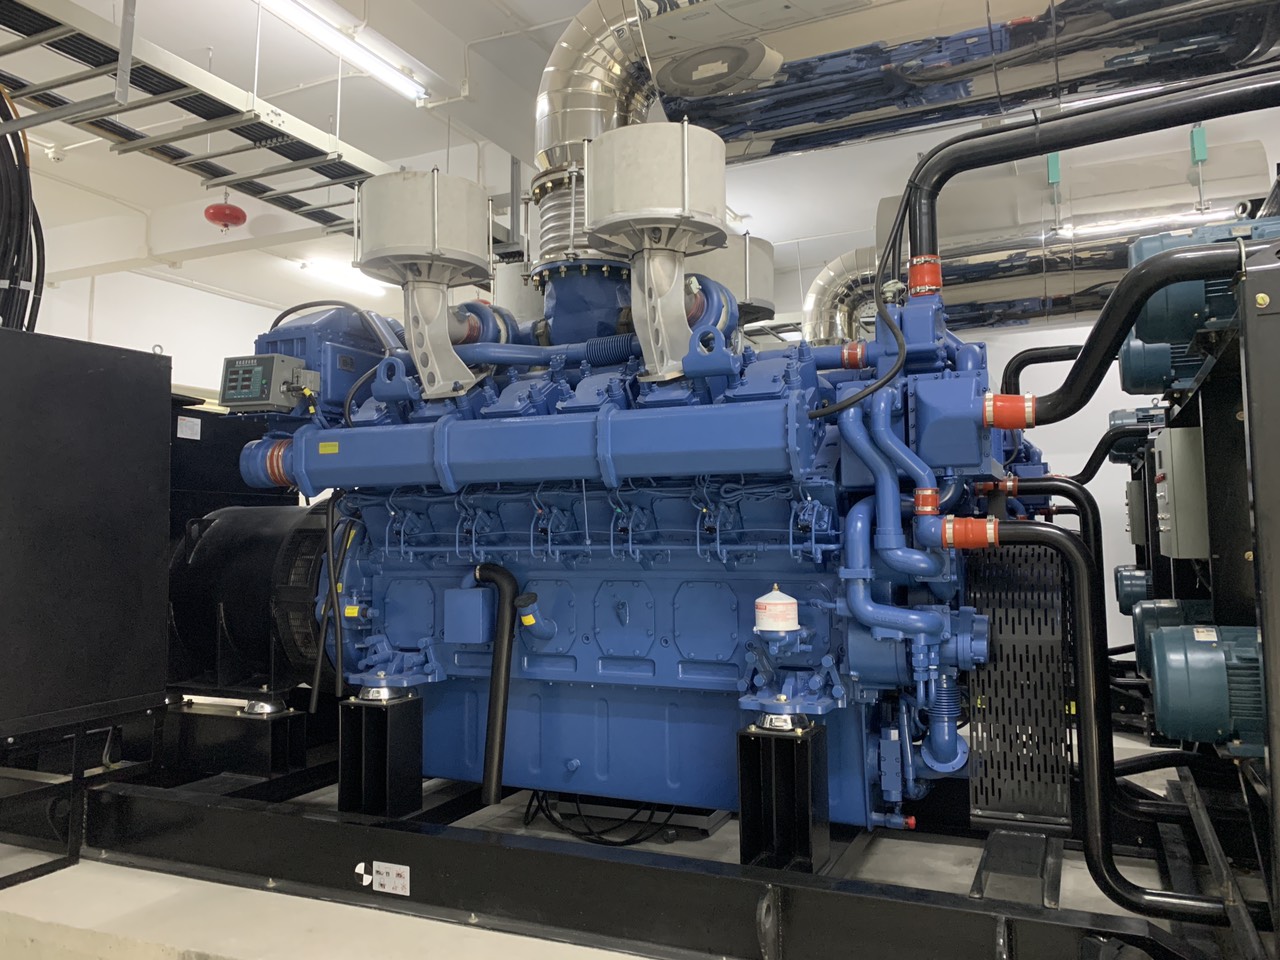 Cung cấp và lắp đặt 02 máy phát điện công suất 2000 kVA tại nhà máy Crystal Martin